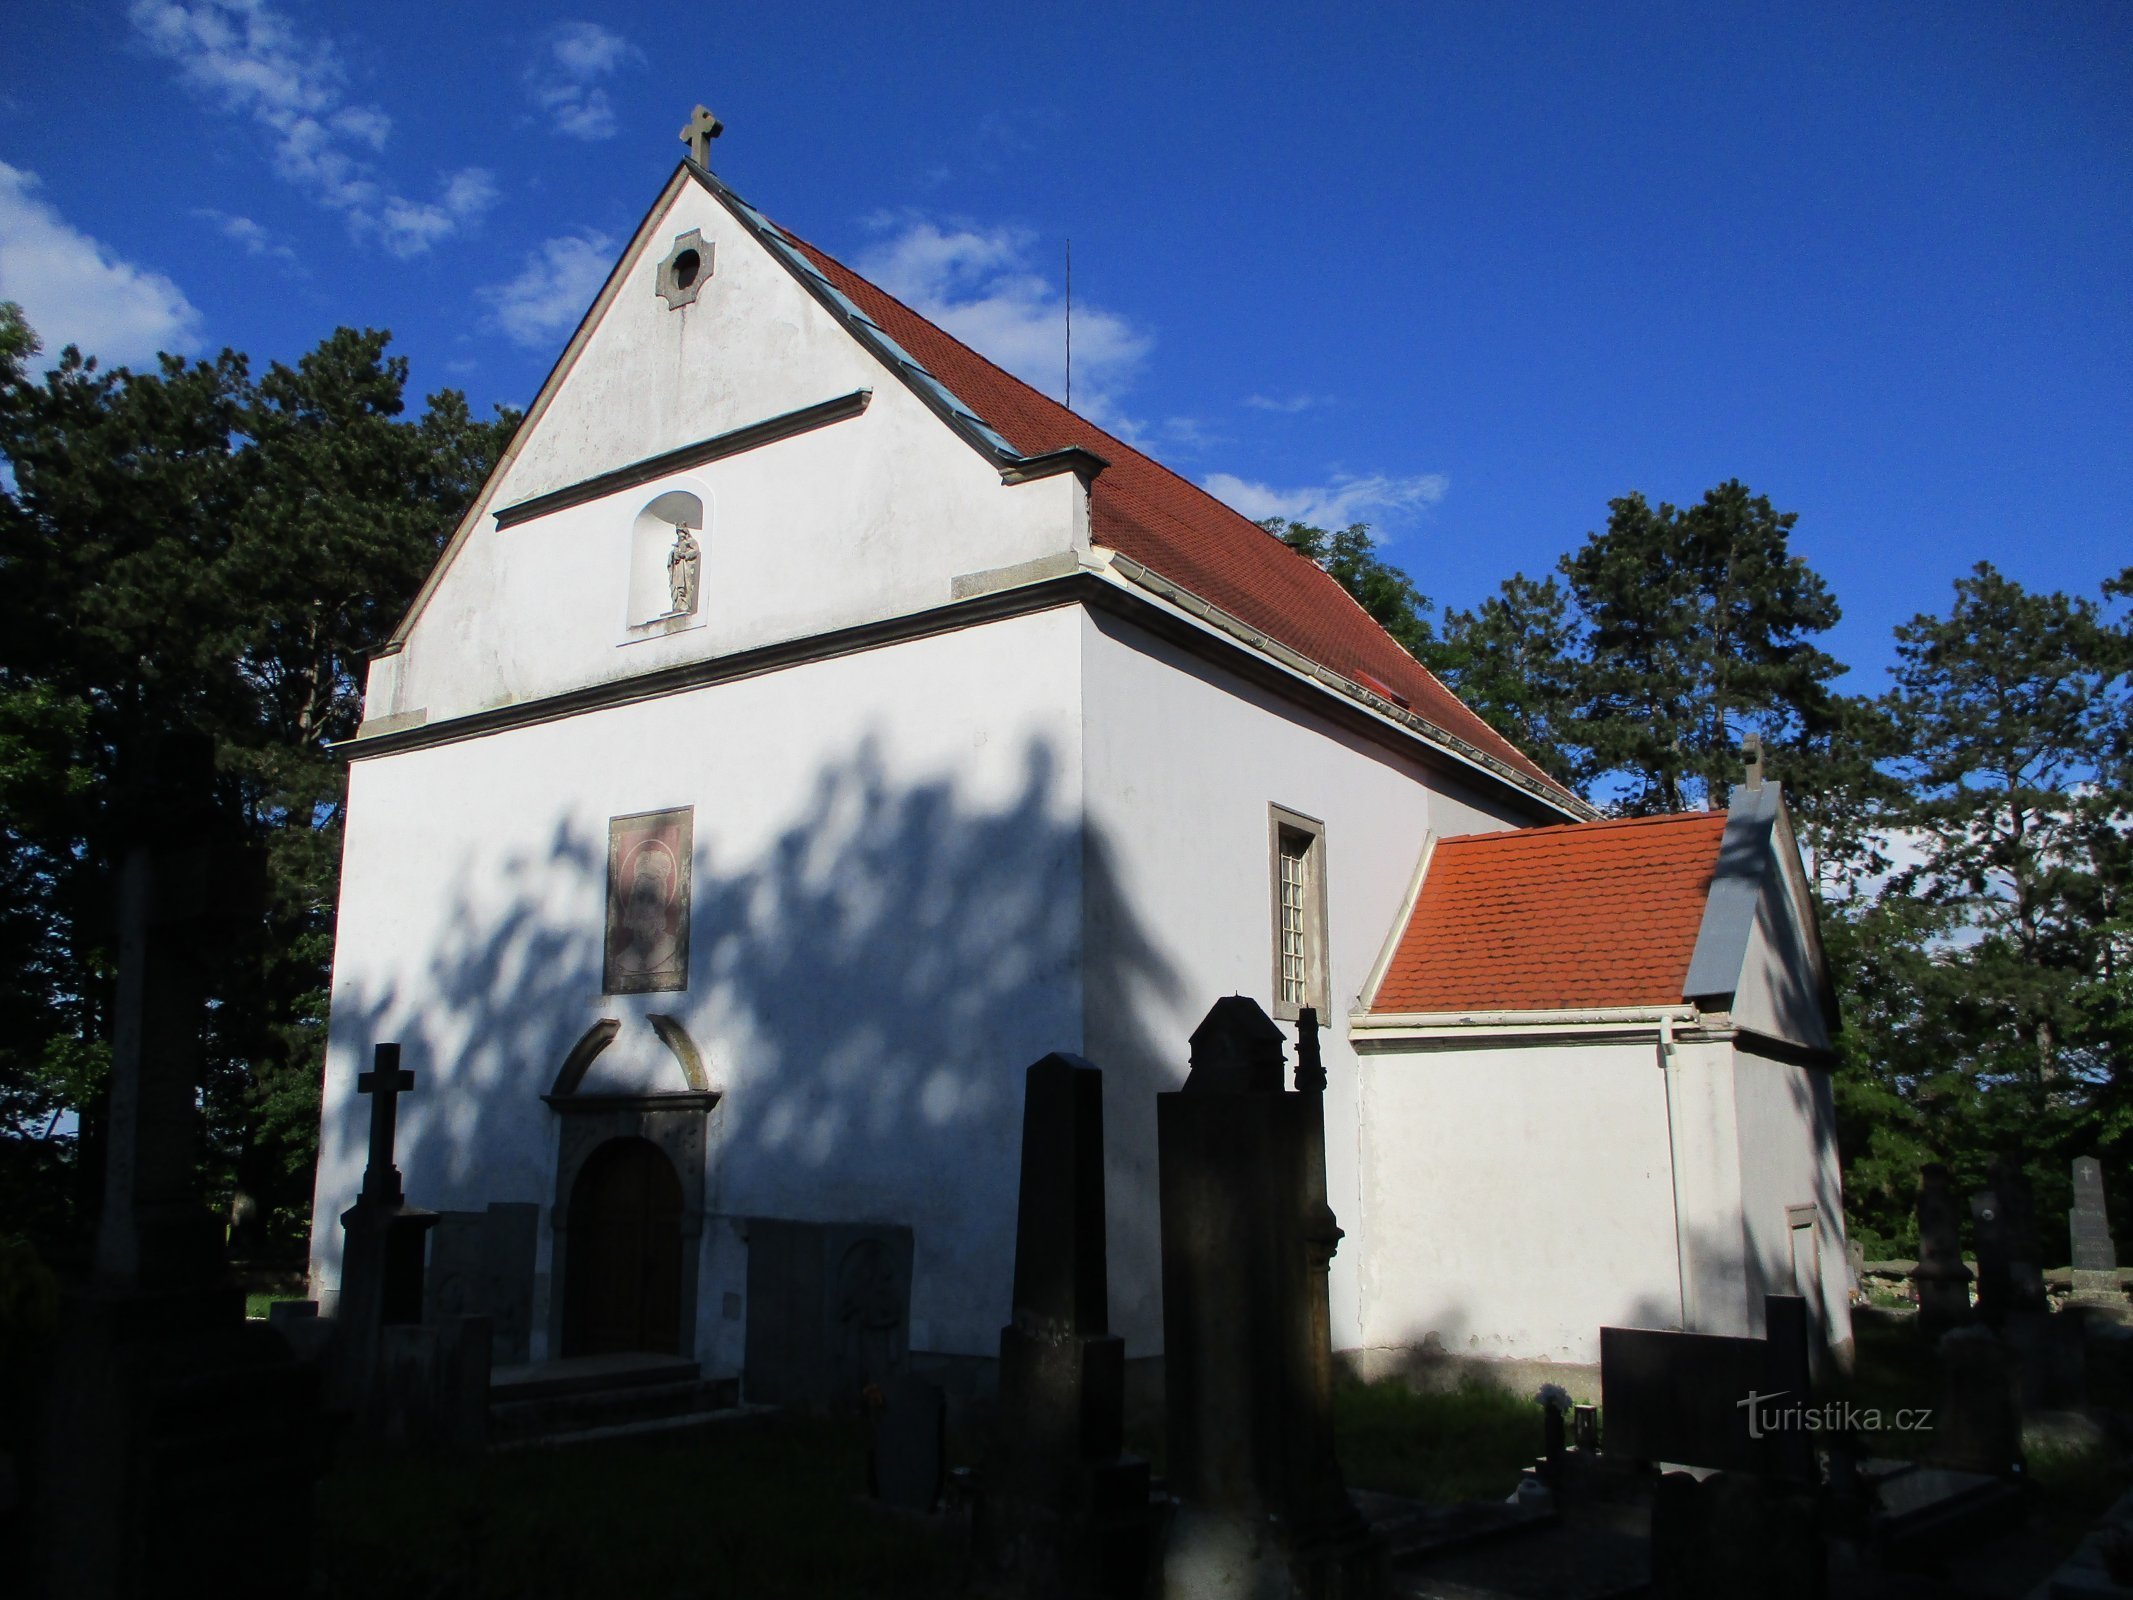 Pyhän kirkko Wenceslas (Habřina, 2.6.2019. kesäkuuta XNUMX)